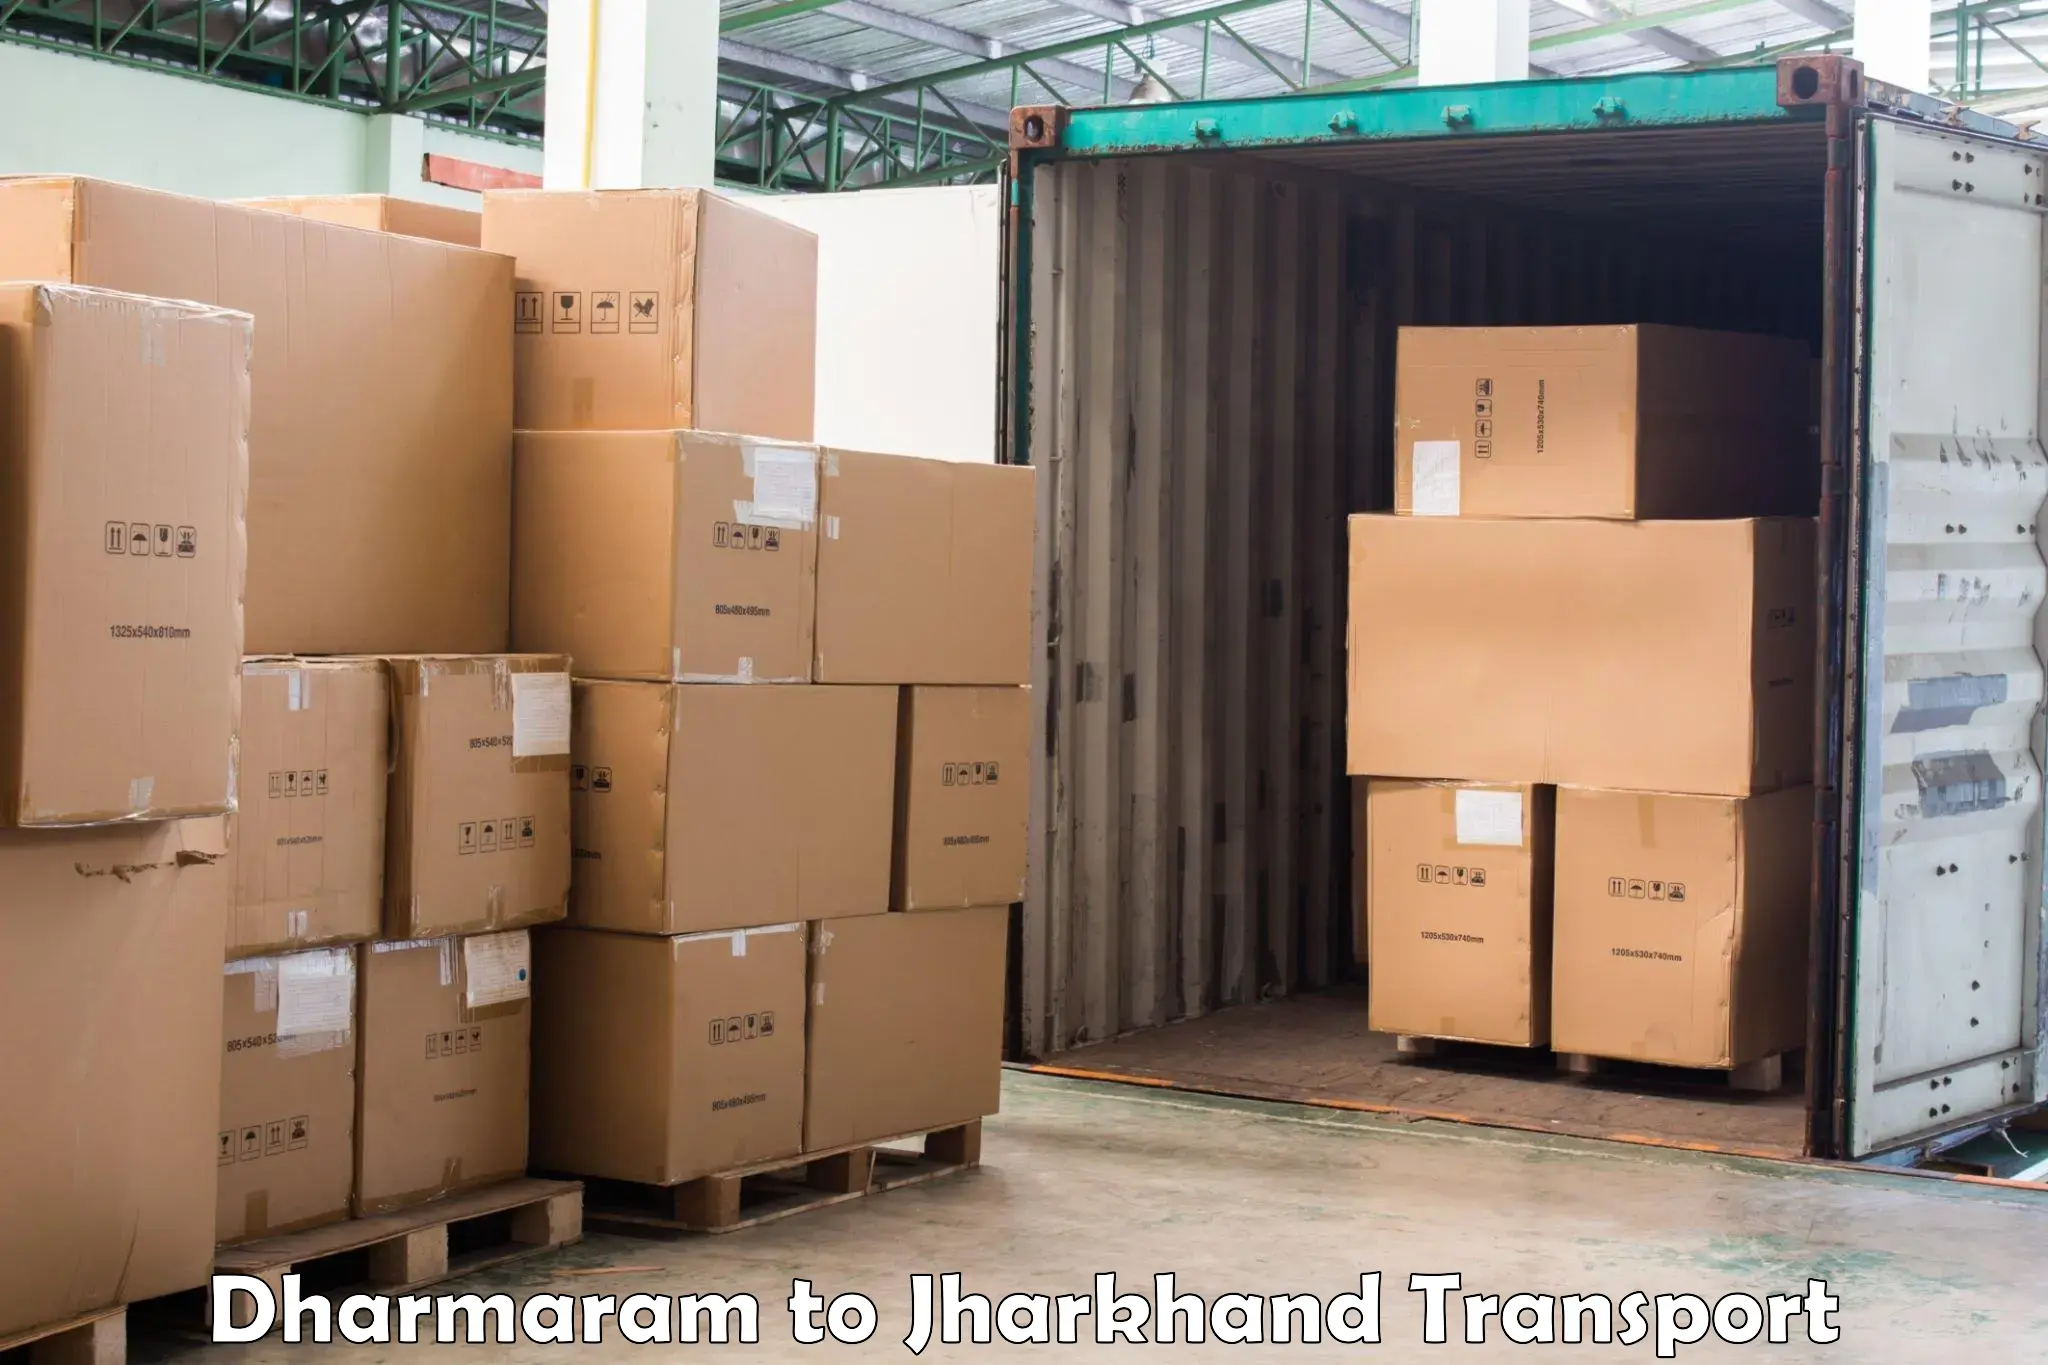 Air freight transport services Dharmaram to Nagar Untari